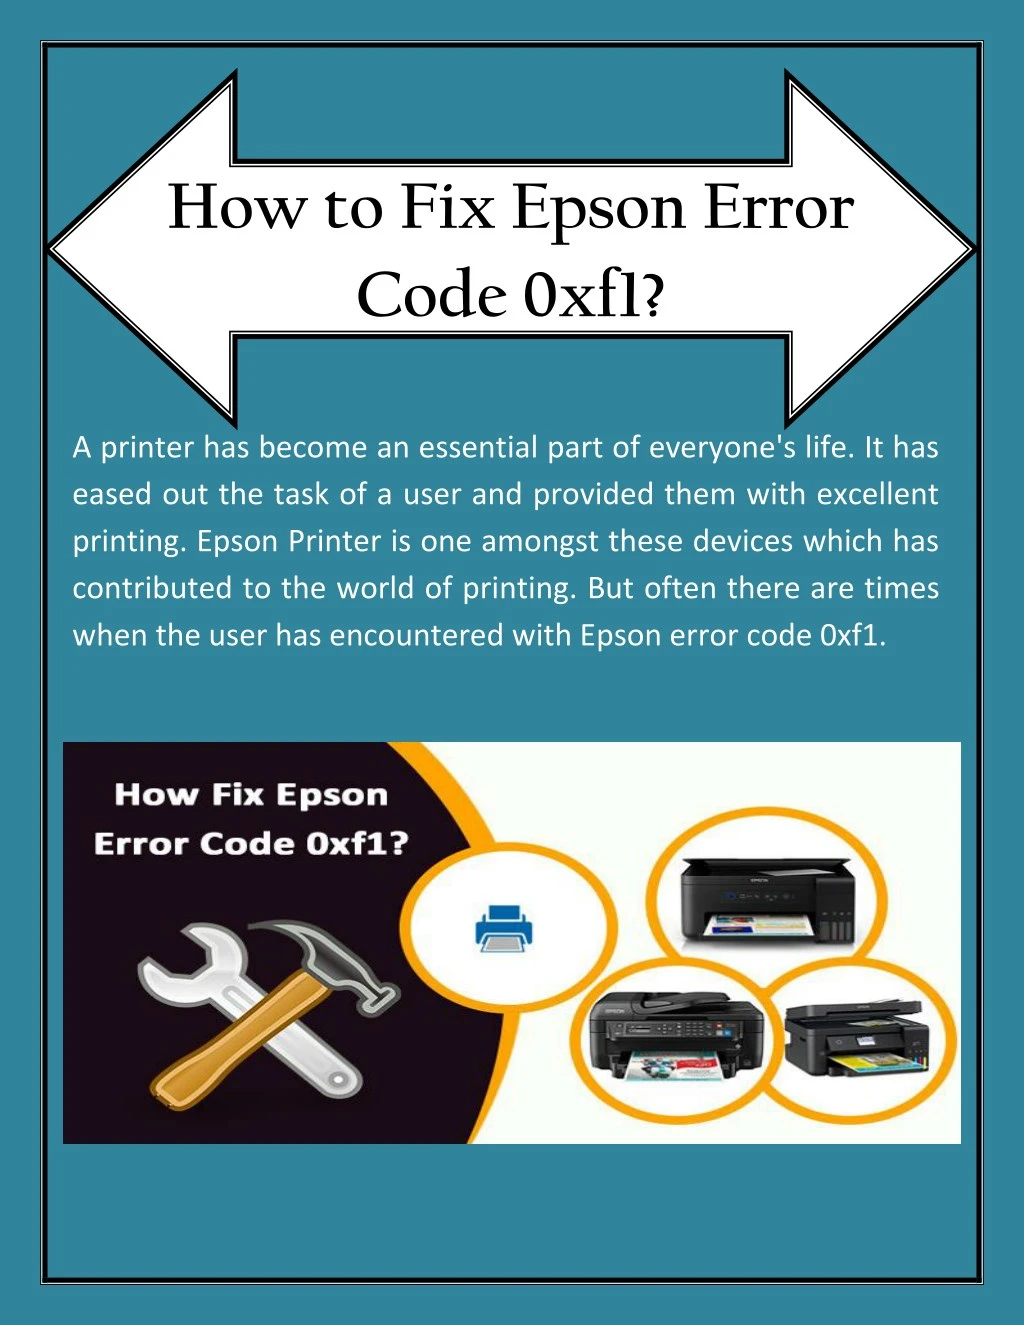 how to fix epson error code 0xf1